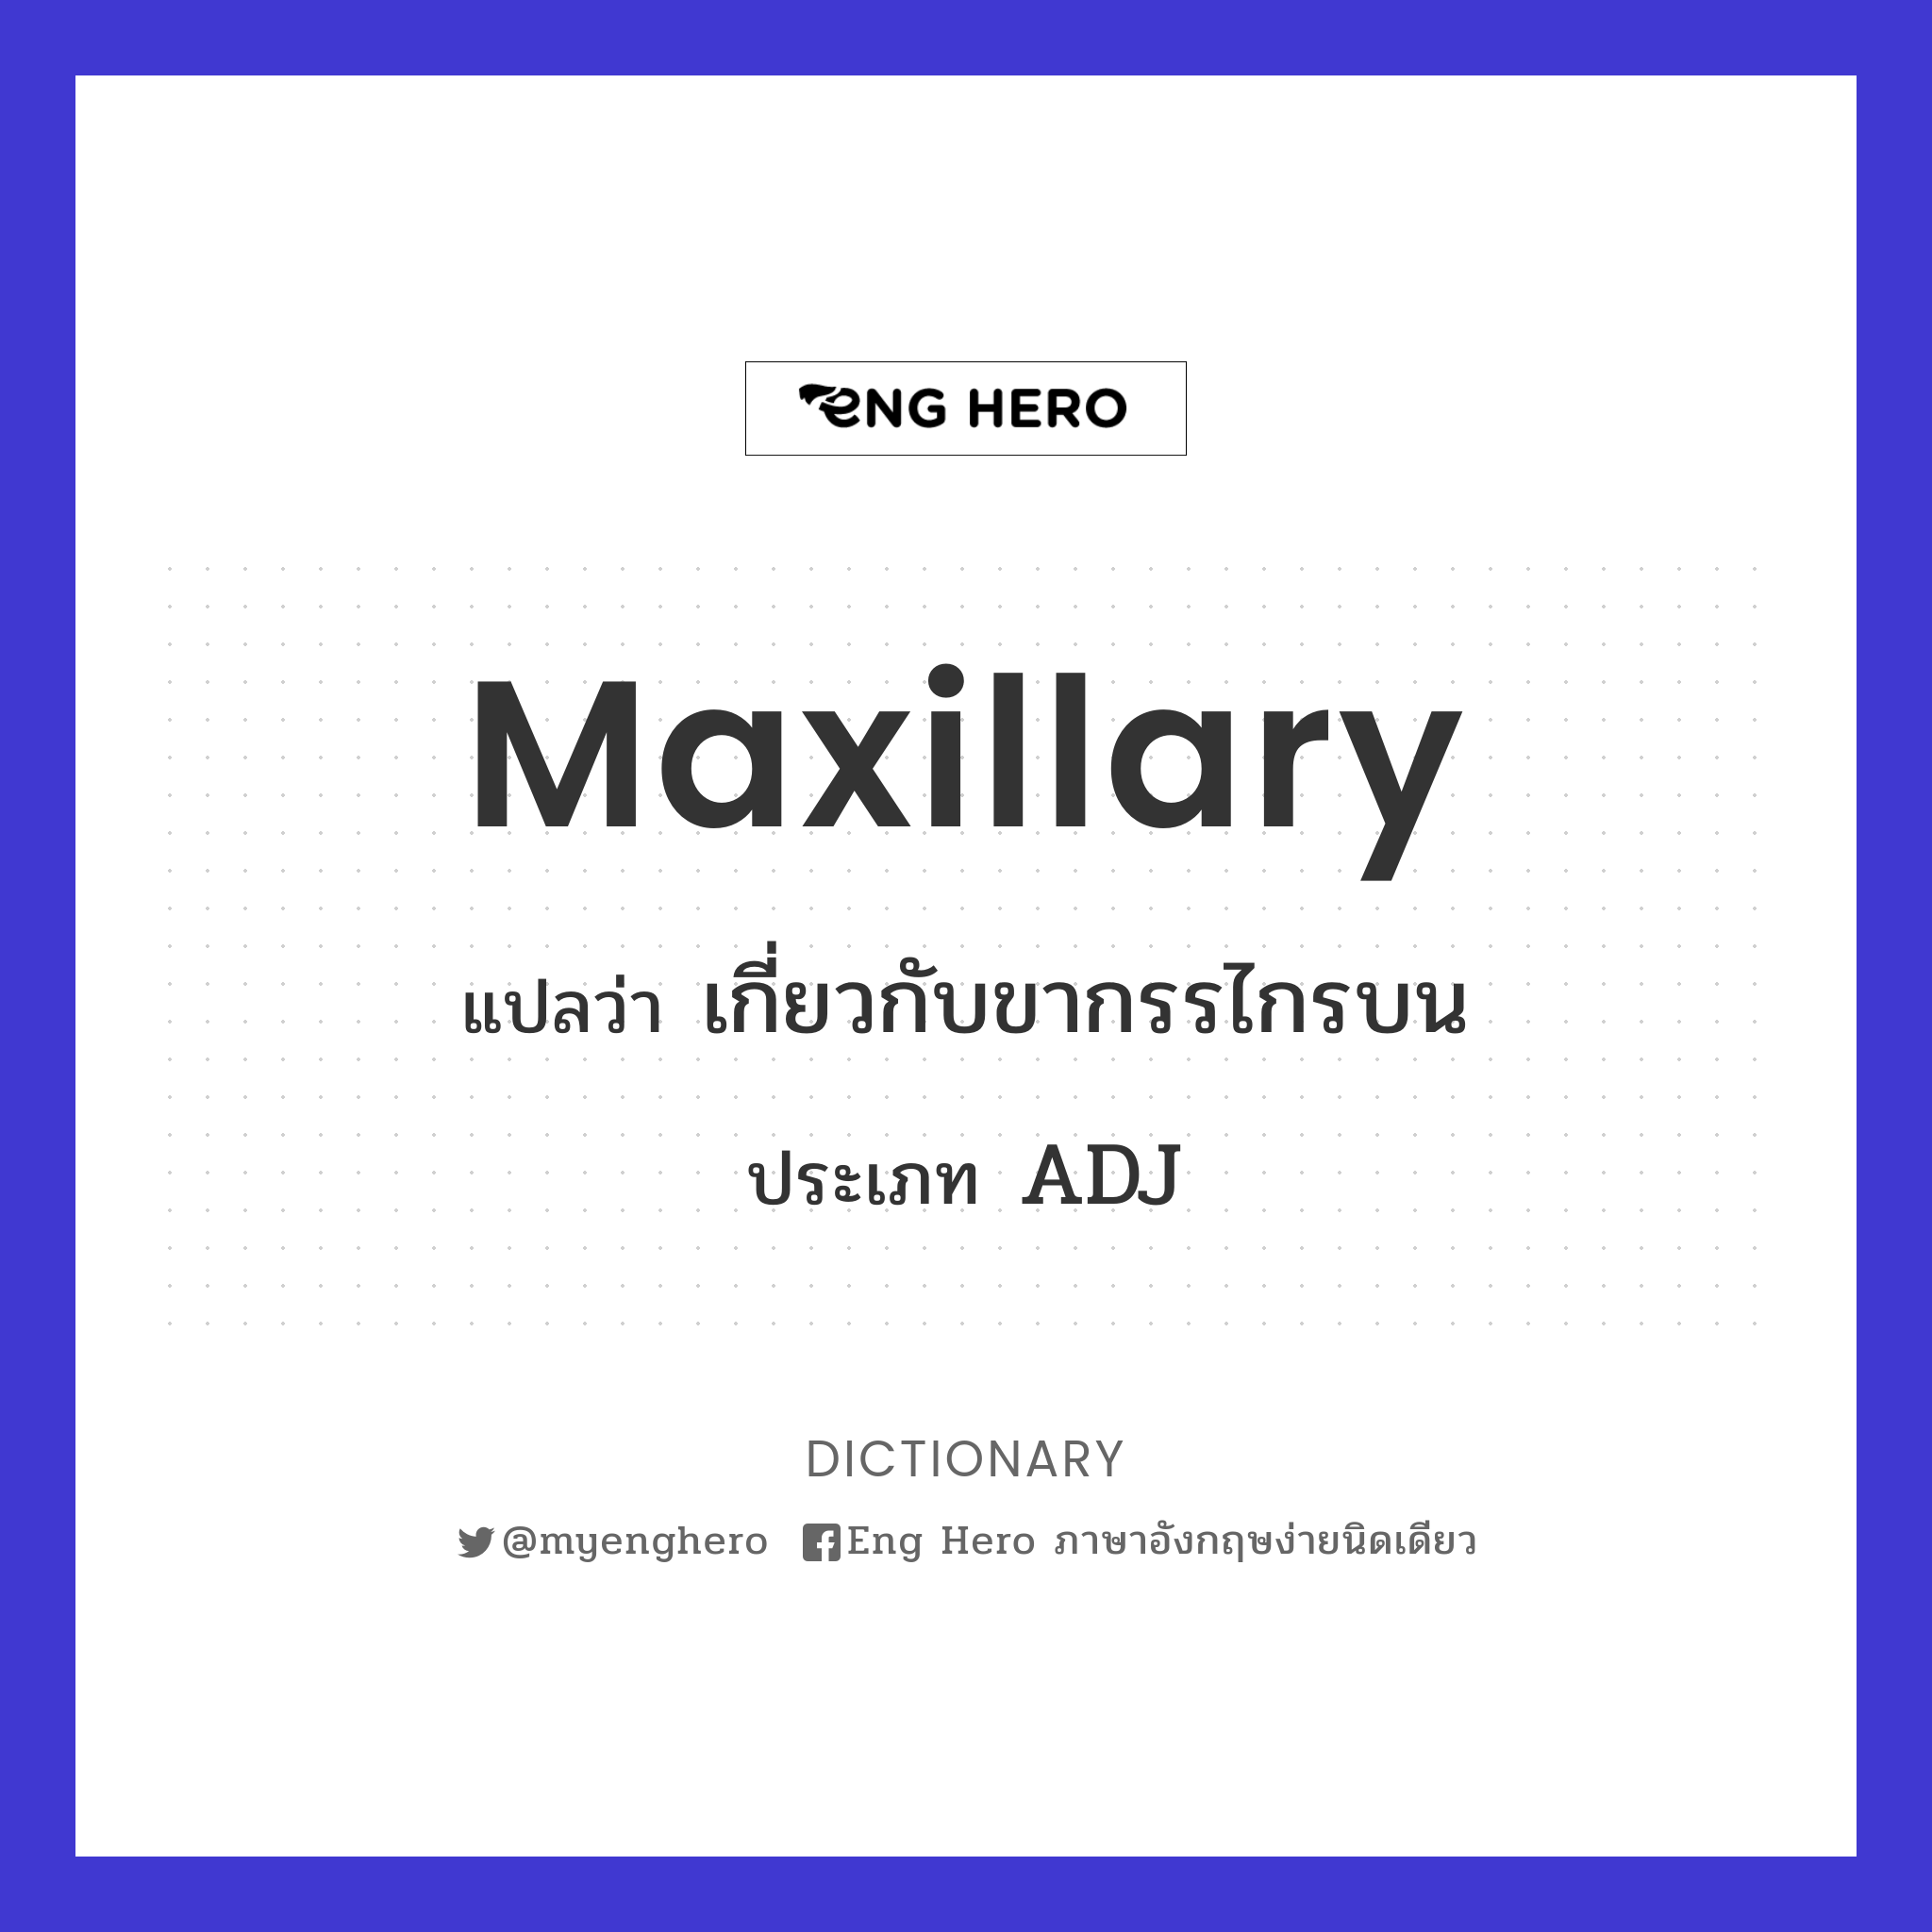 maxillary